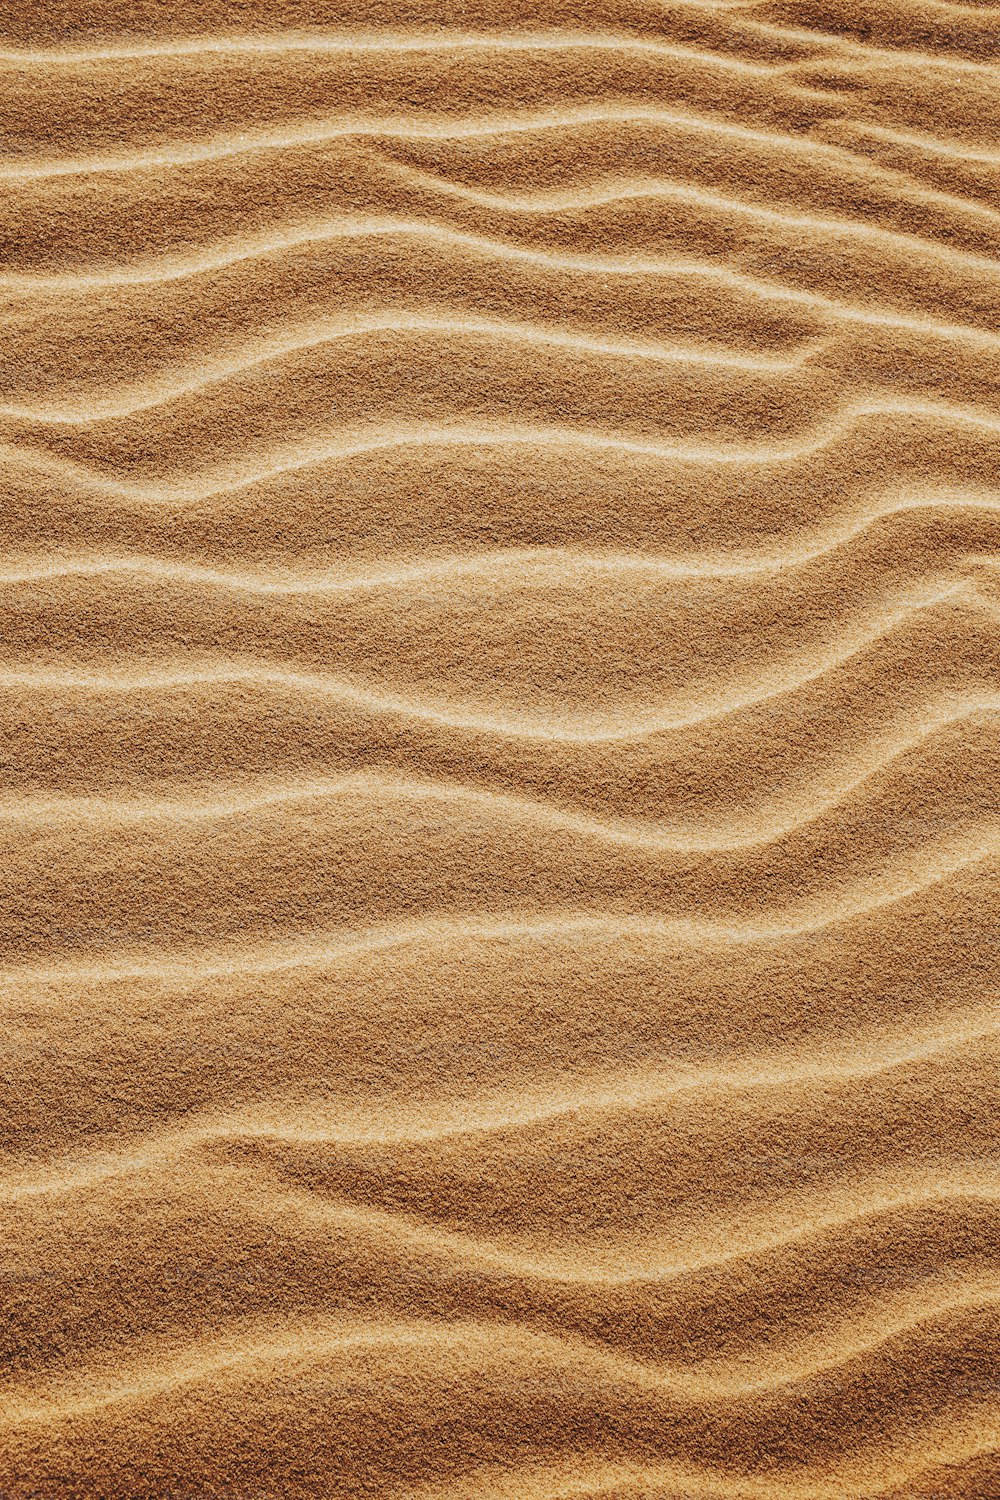 eine Sanddüne mit Wellenlinien im Sand